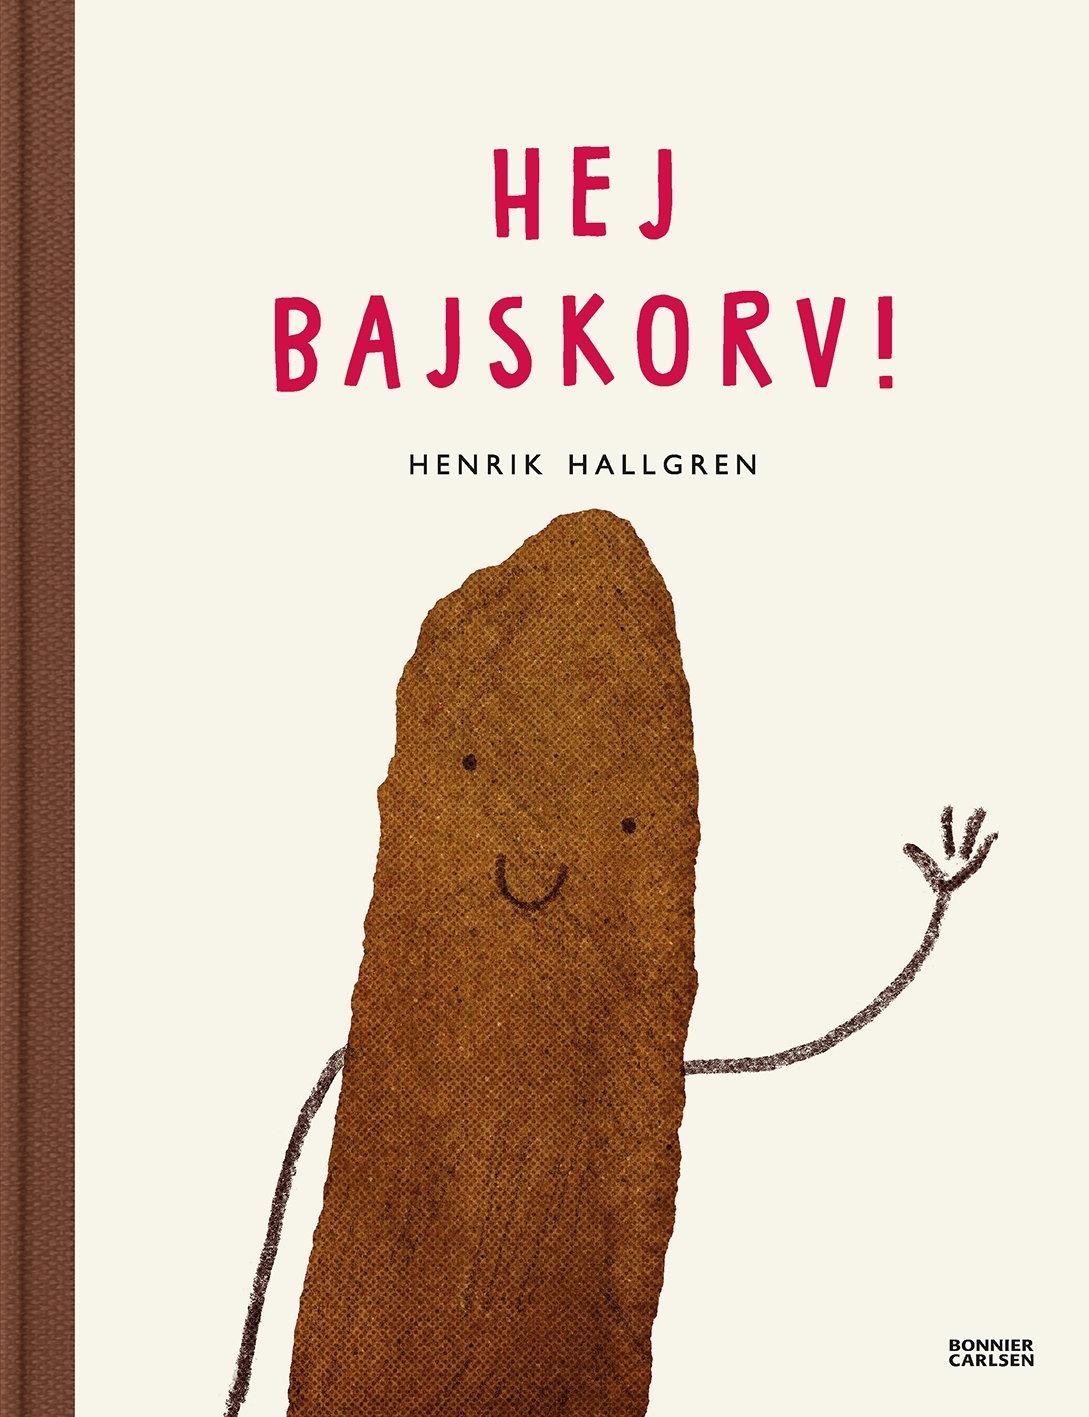 "Hej bajskorv!" av Henrik Hallgren är en av de senaste barnböckerna på temat bajs. Pressbild.